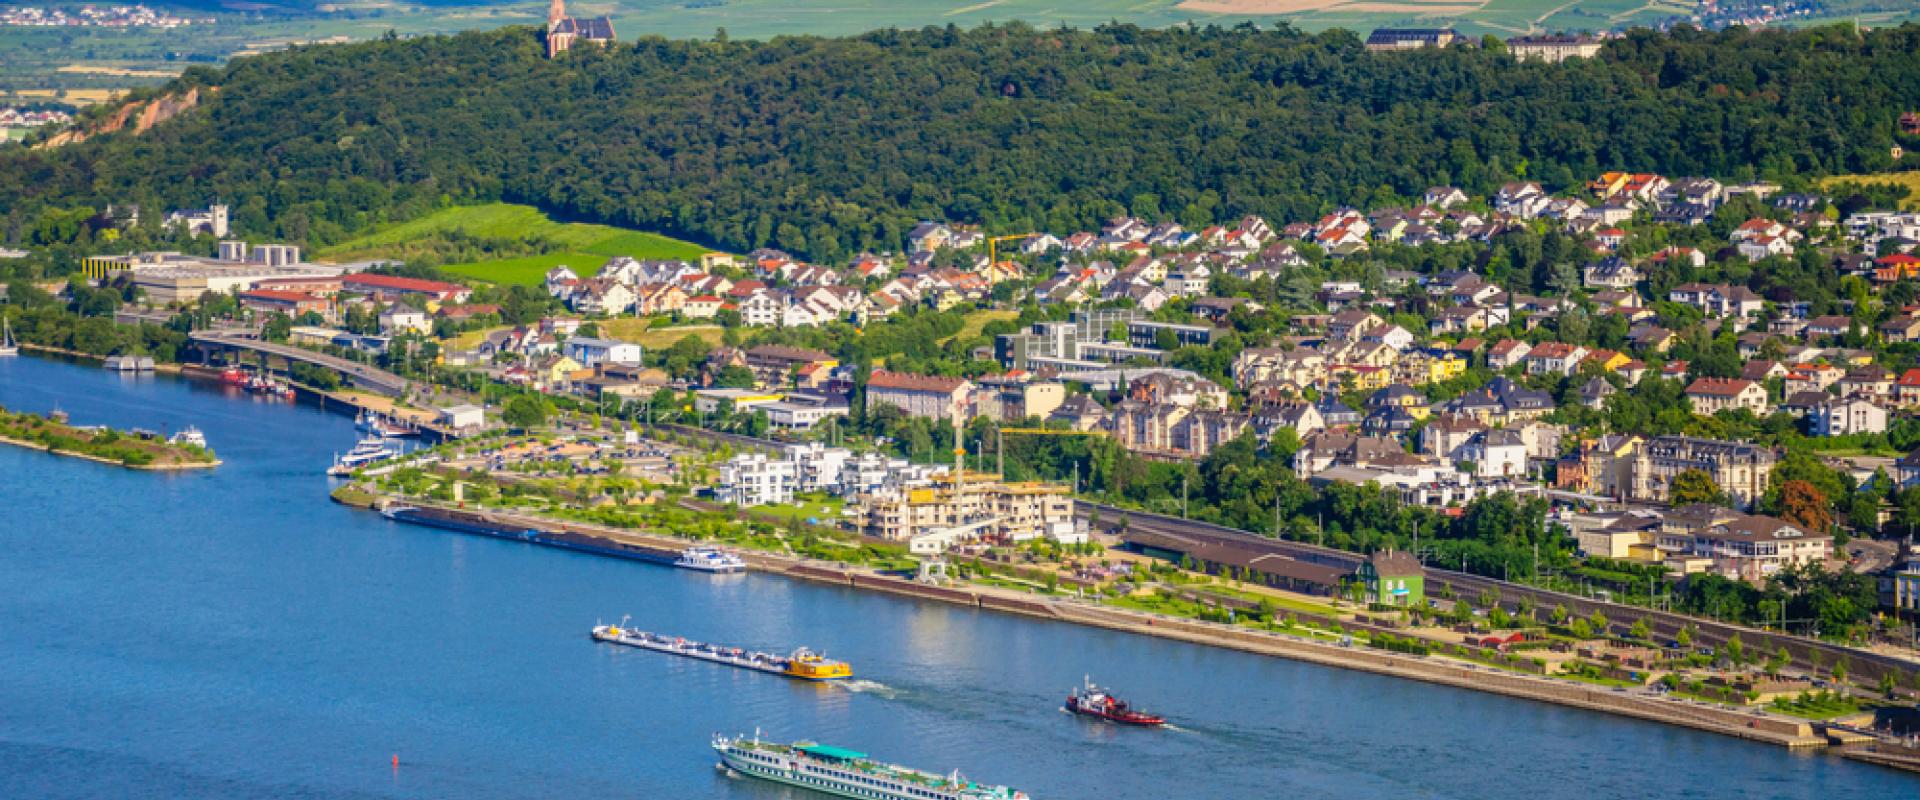 Bingen am Rhein 